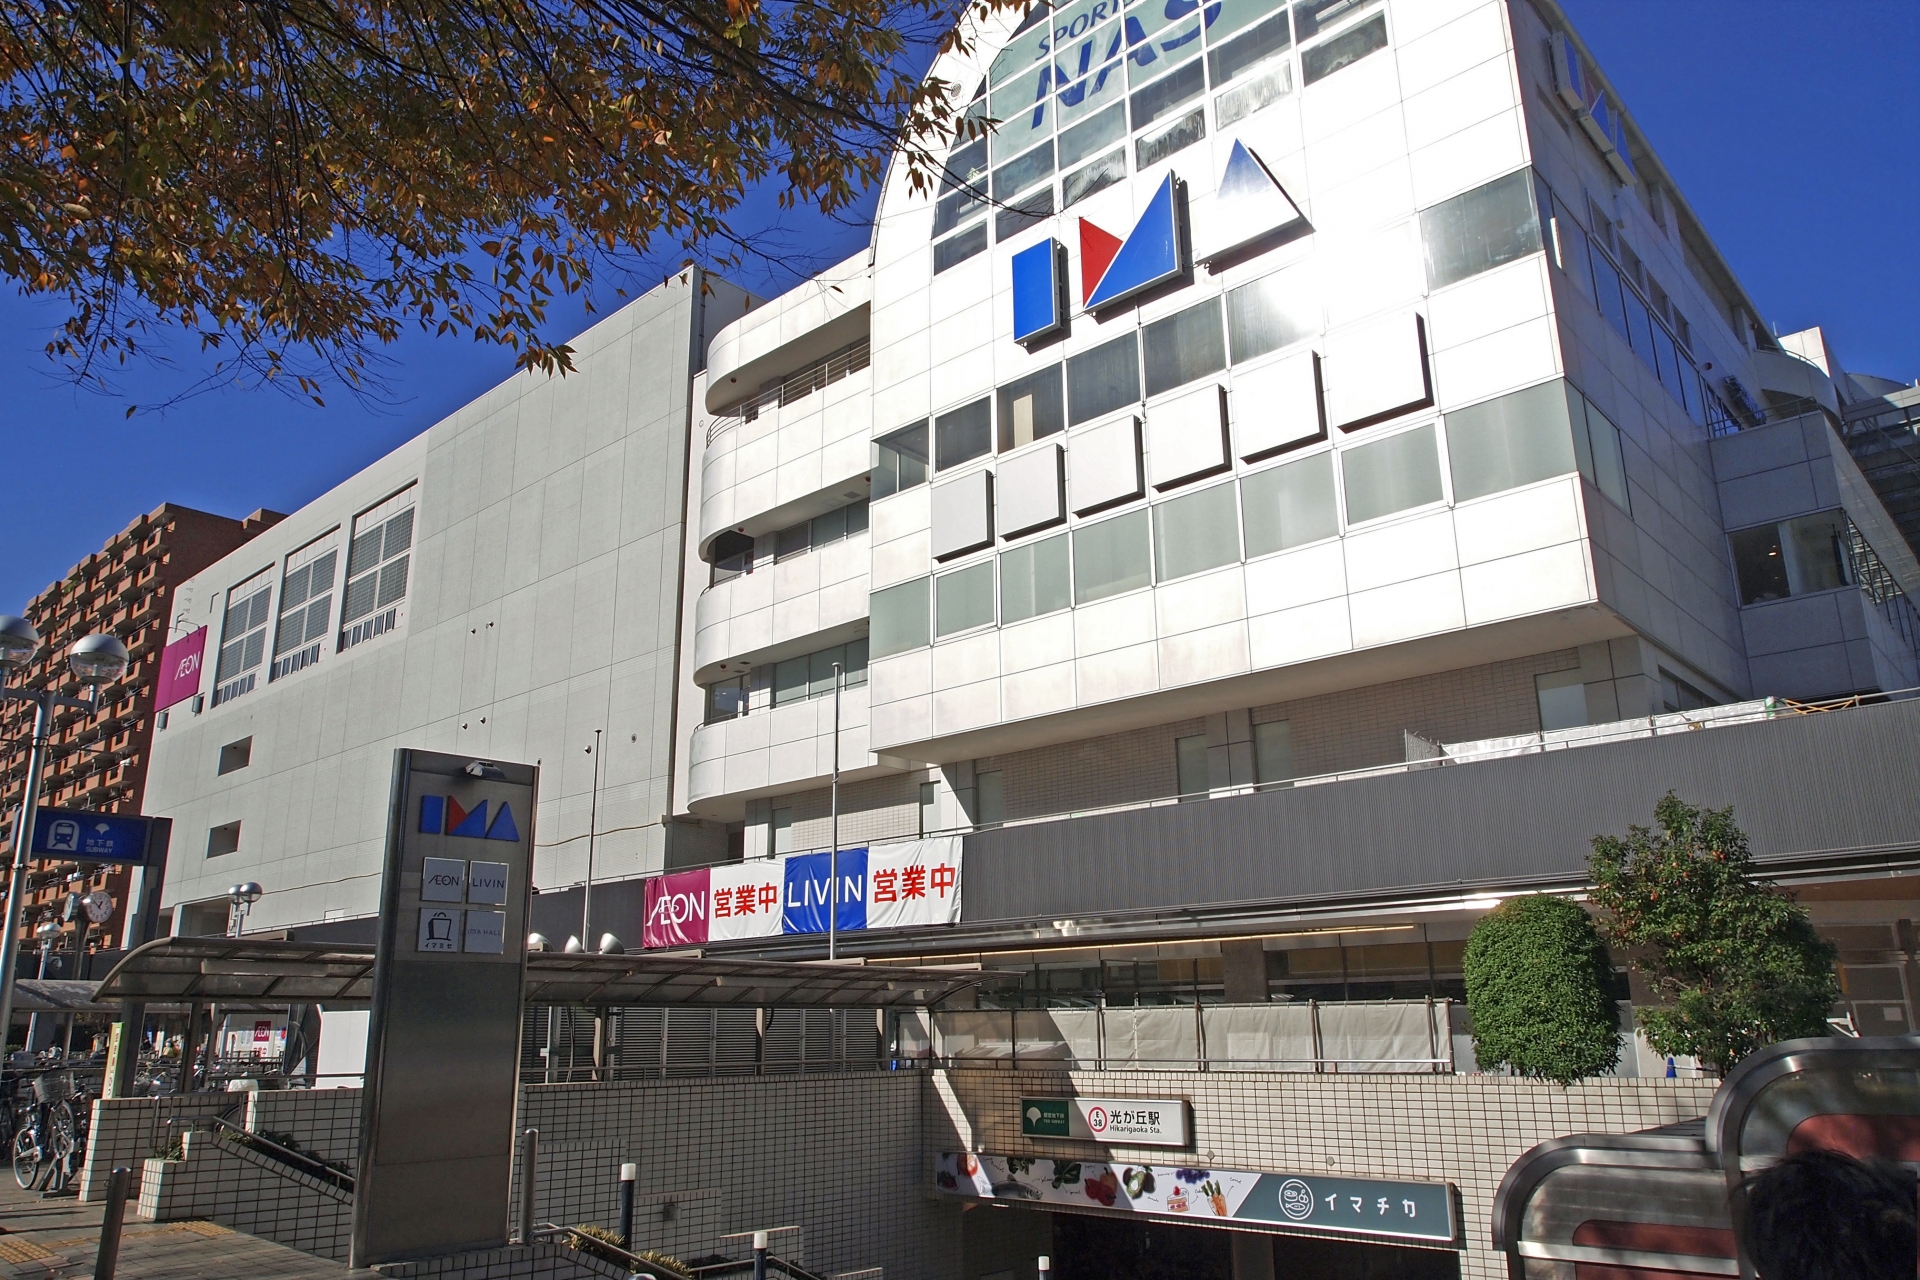 「6の字型」で運行する大江戸線。日本で2番目に鉄輪式リニアモーターミニ地下鉄を採用している。後発で建設されたので、既存地下鉄路線に比べると全般的に駅ホームが深い。画像は光が丘駅。